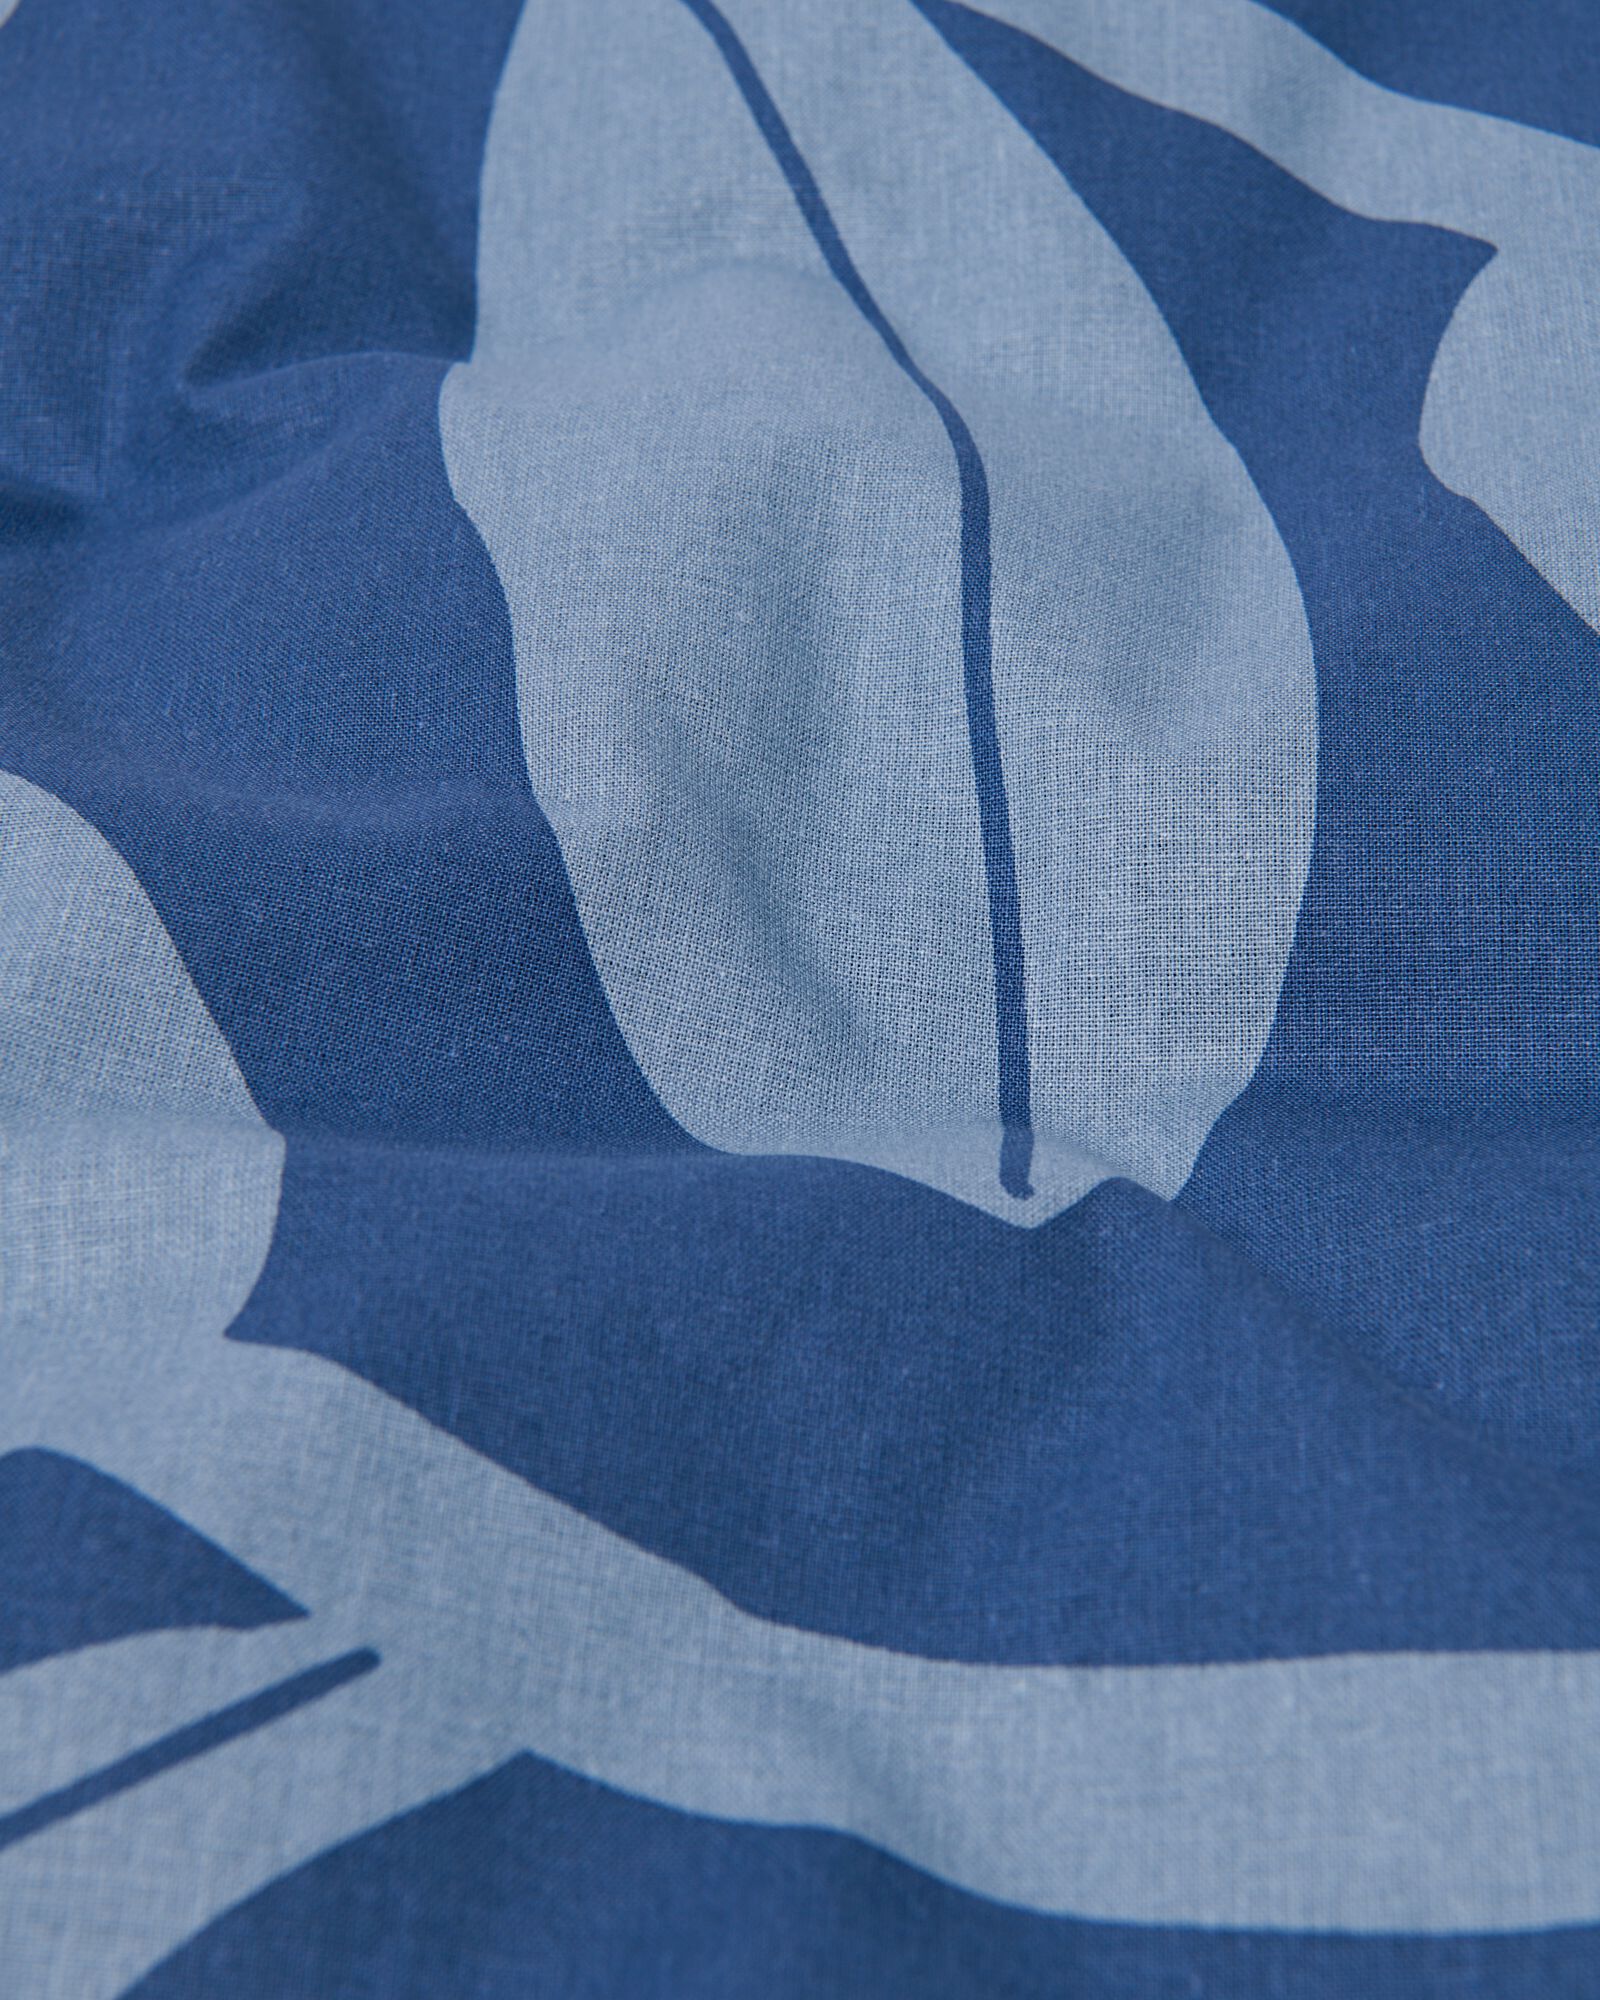 Bettwäsche, Soft Cotton, 200 x 220 cm, Tulpen, blau - 5730186 - HEMA